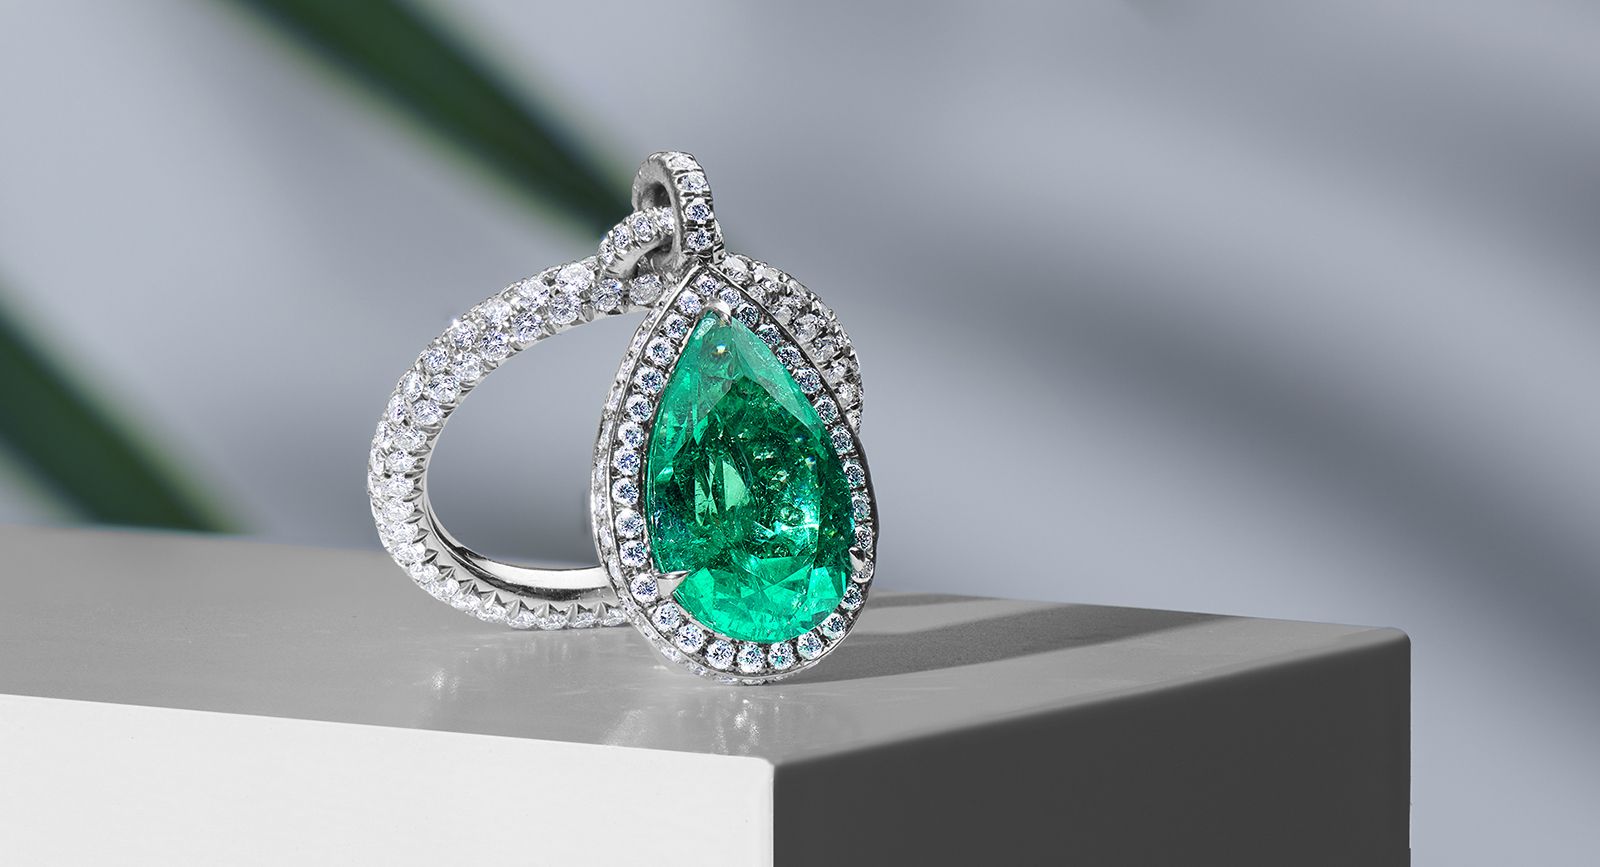 Muzo x Glajz's latest emerald and pink diamond collaboration